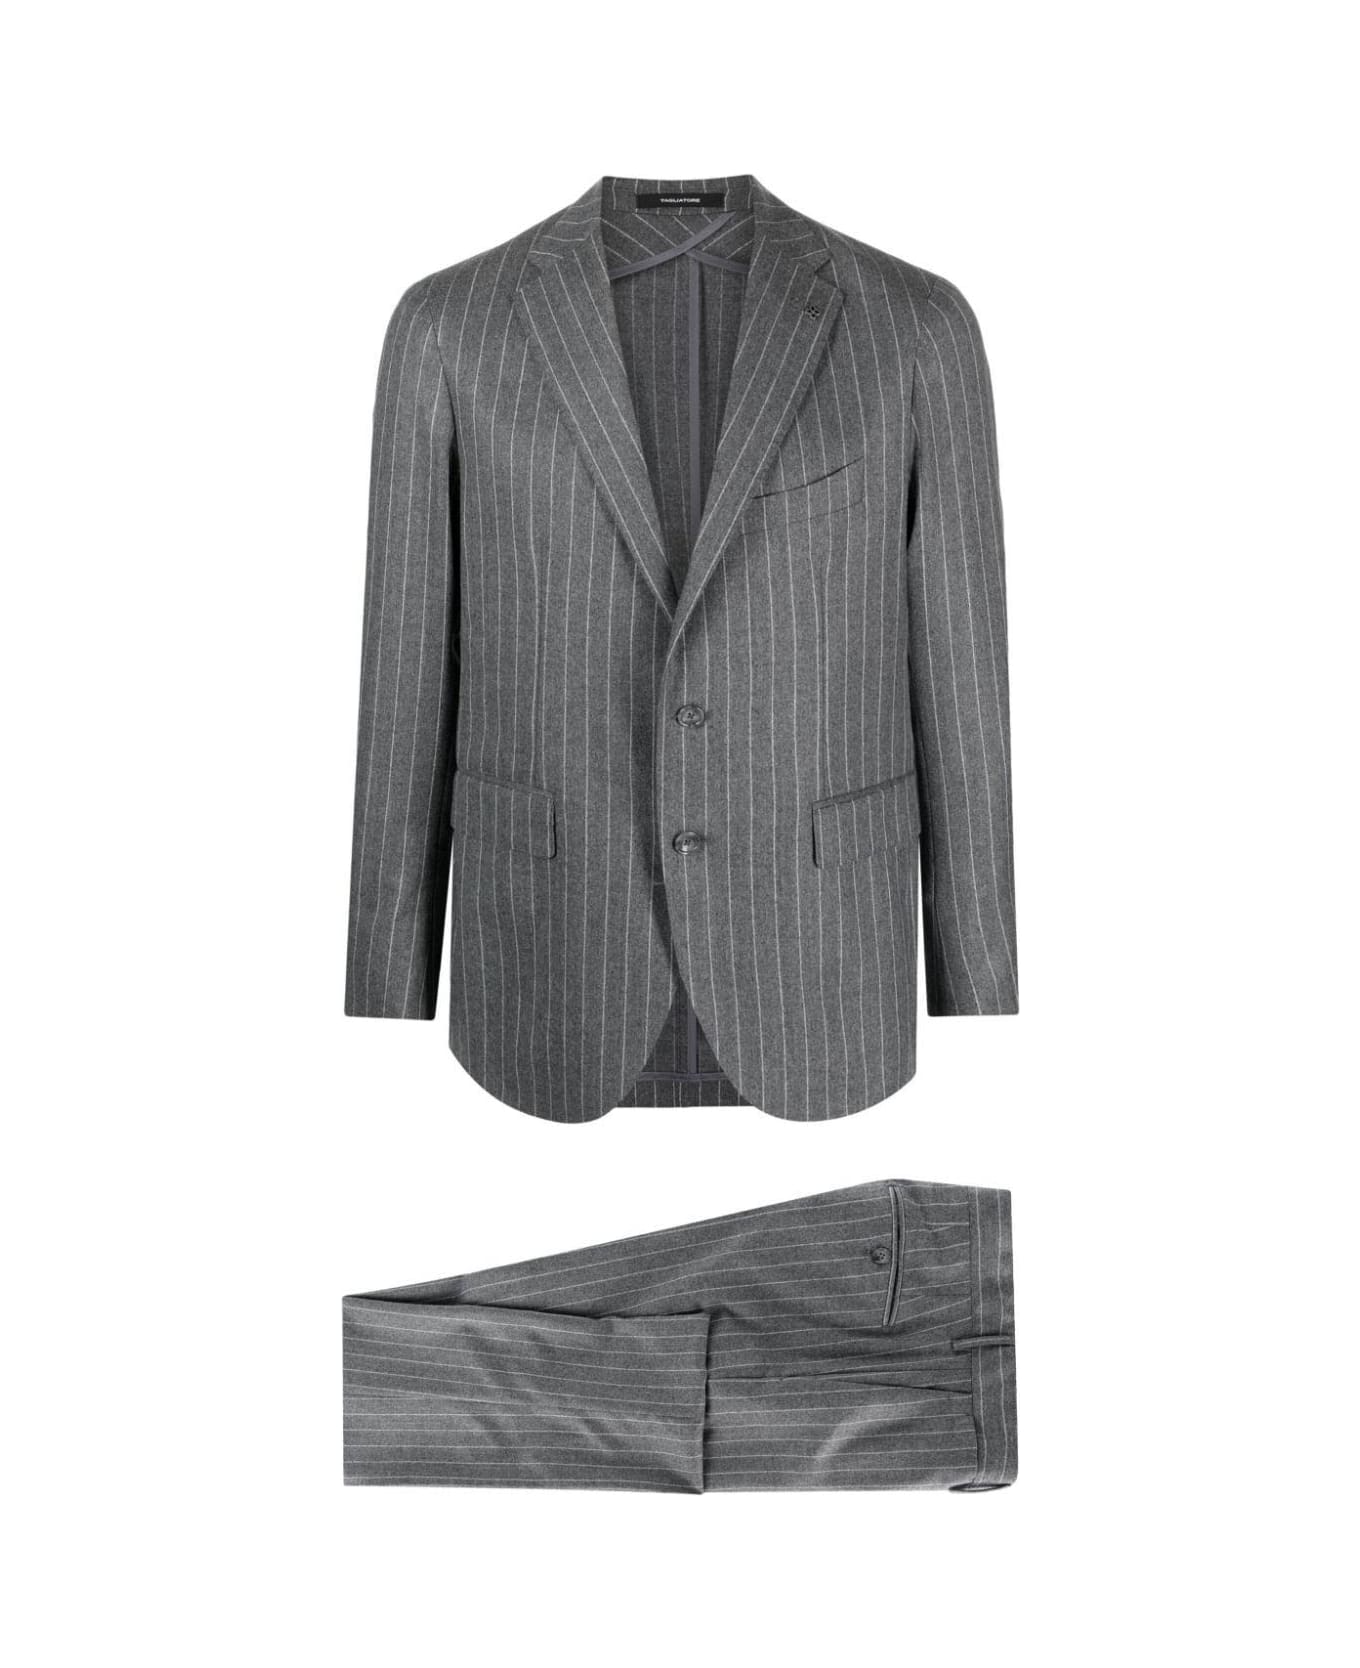 Tagliatore Suit - Medium Grey スーツ